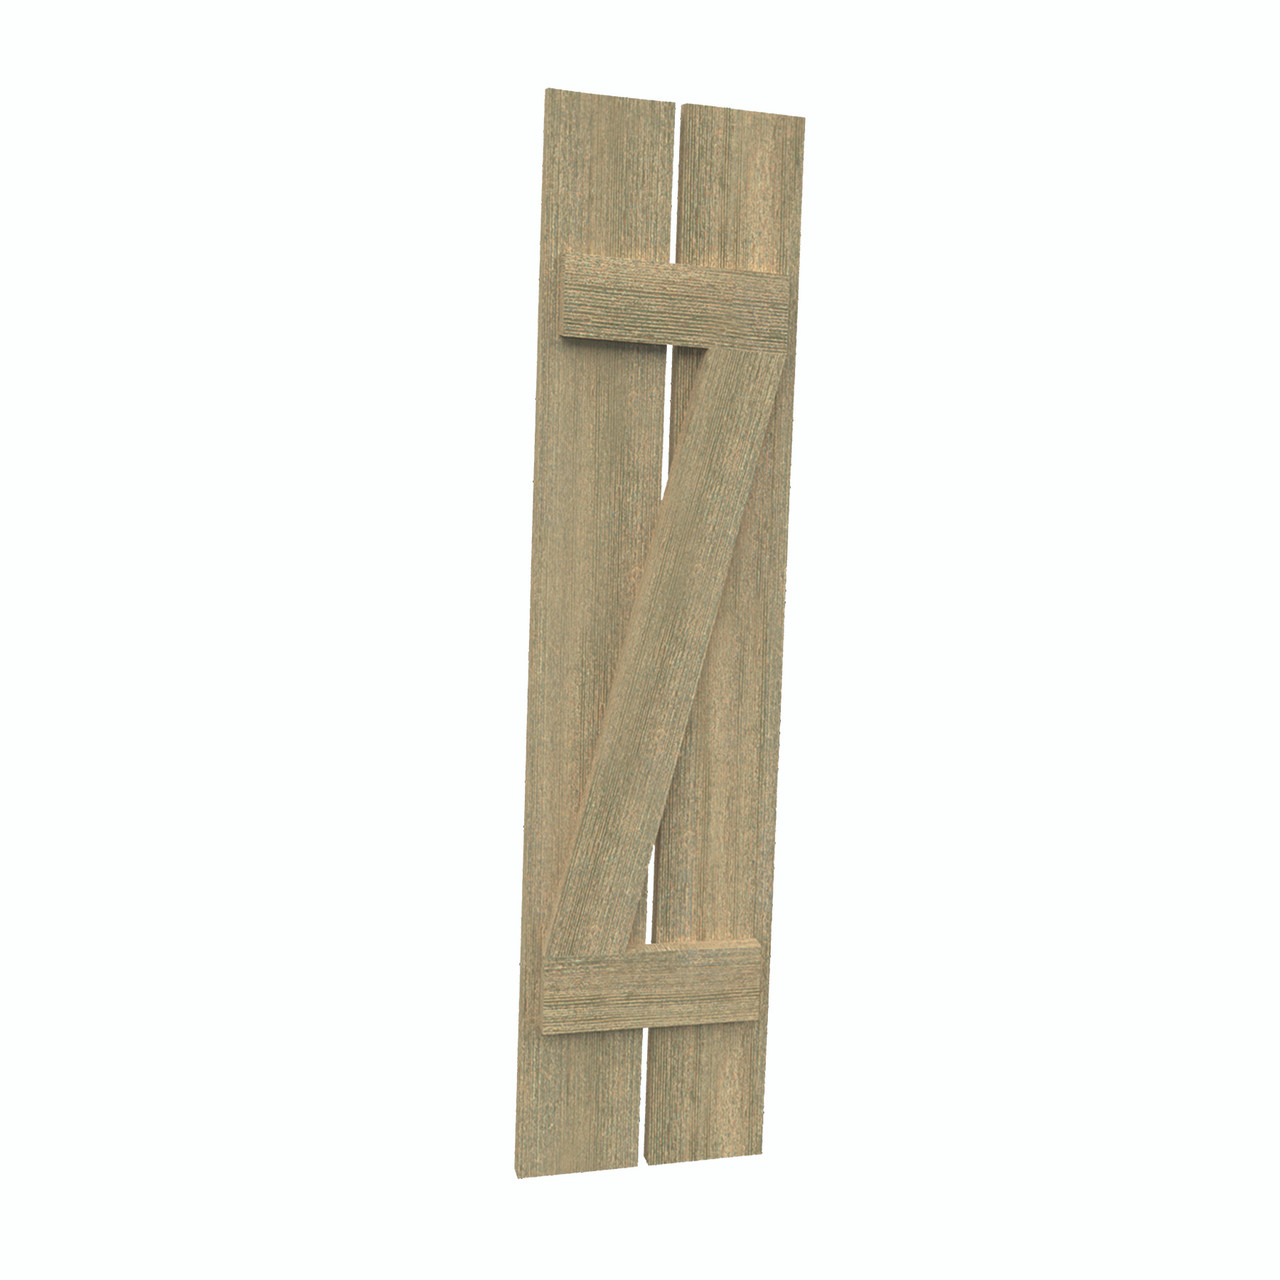 12 inch by 45 inch Plank Shutter with 2-Plank, Z-Batten